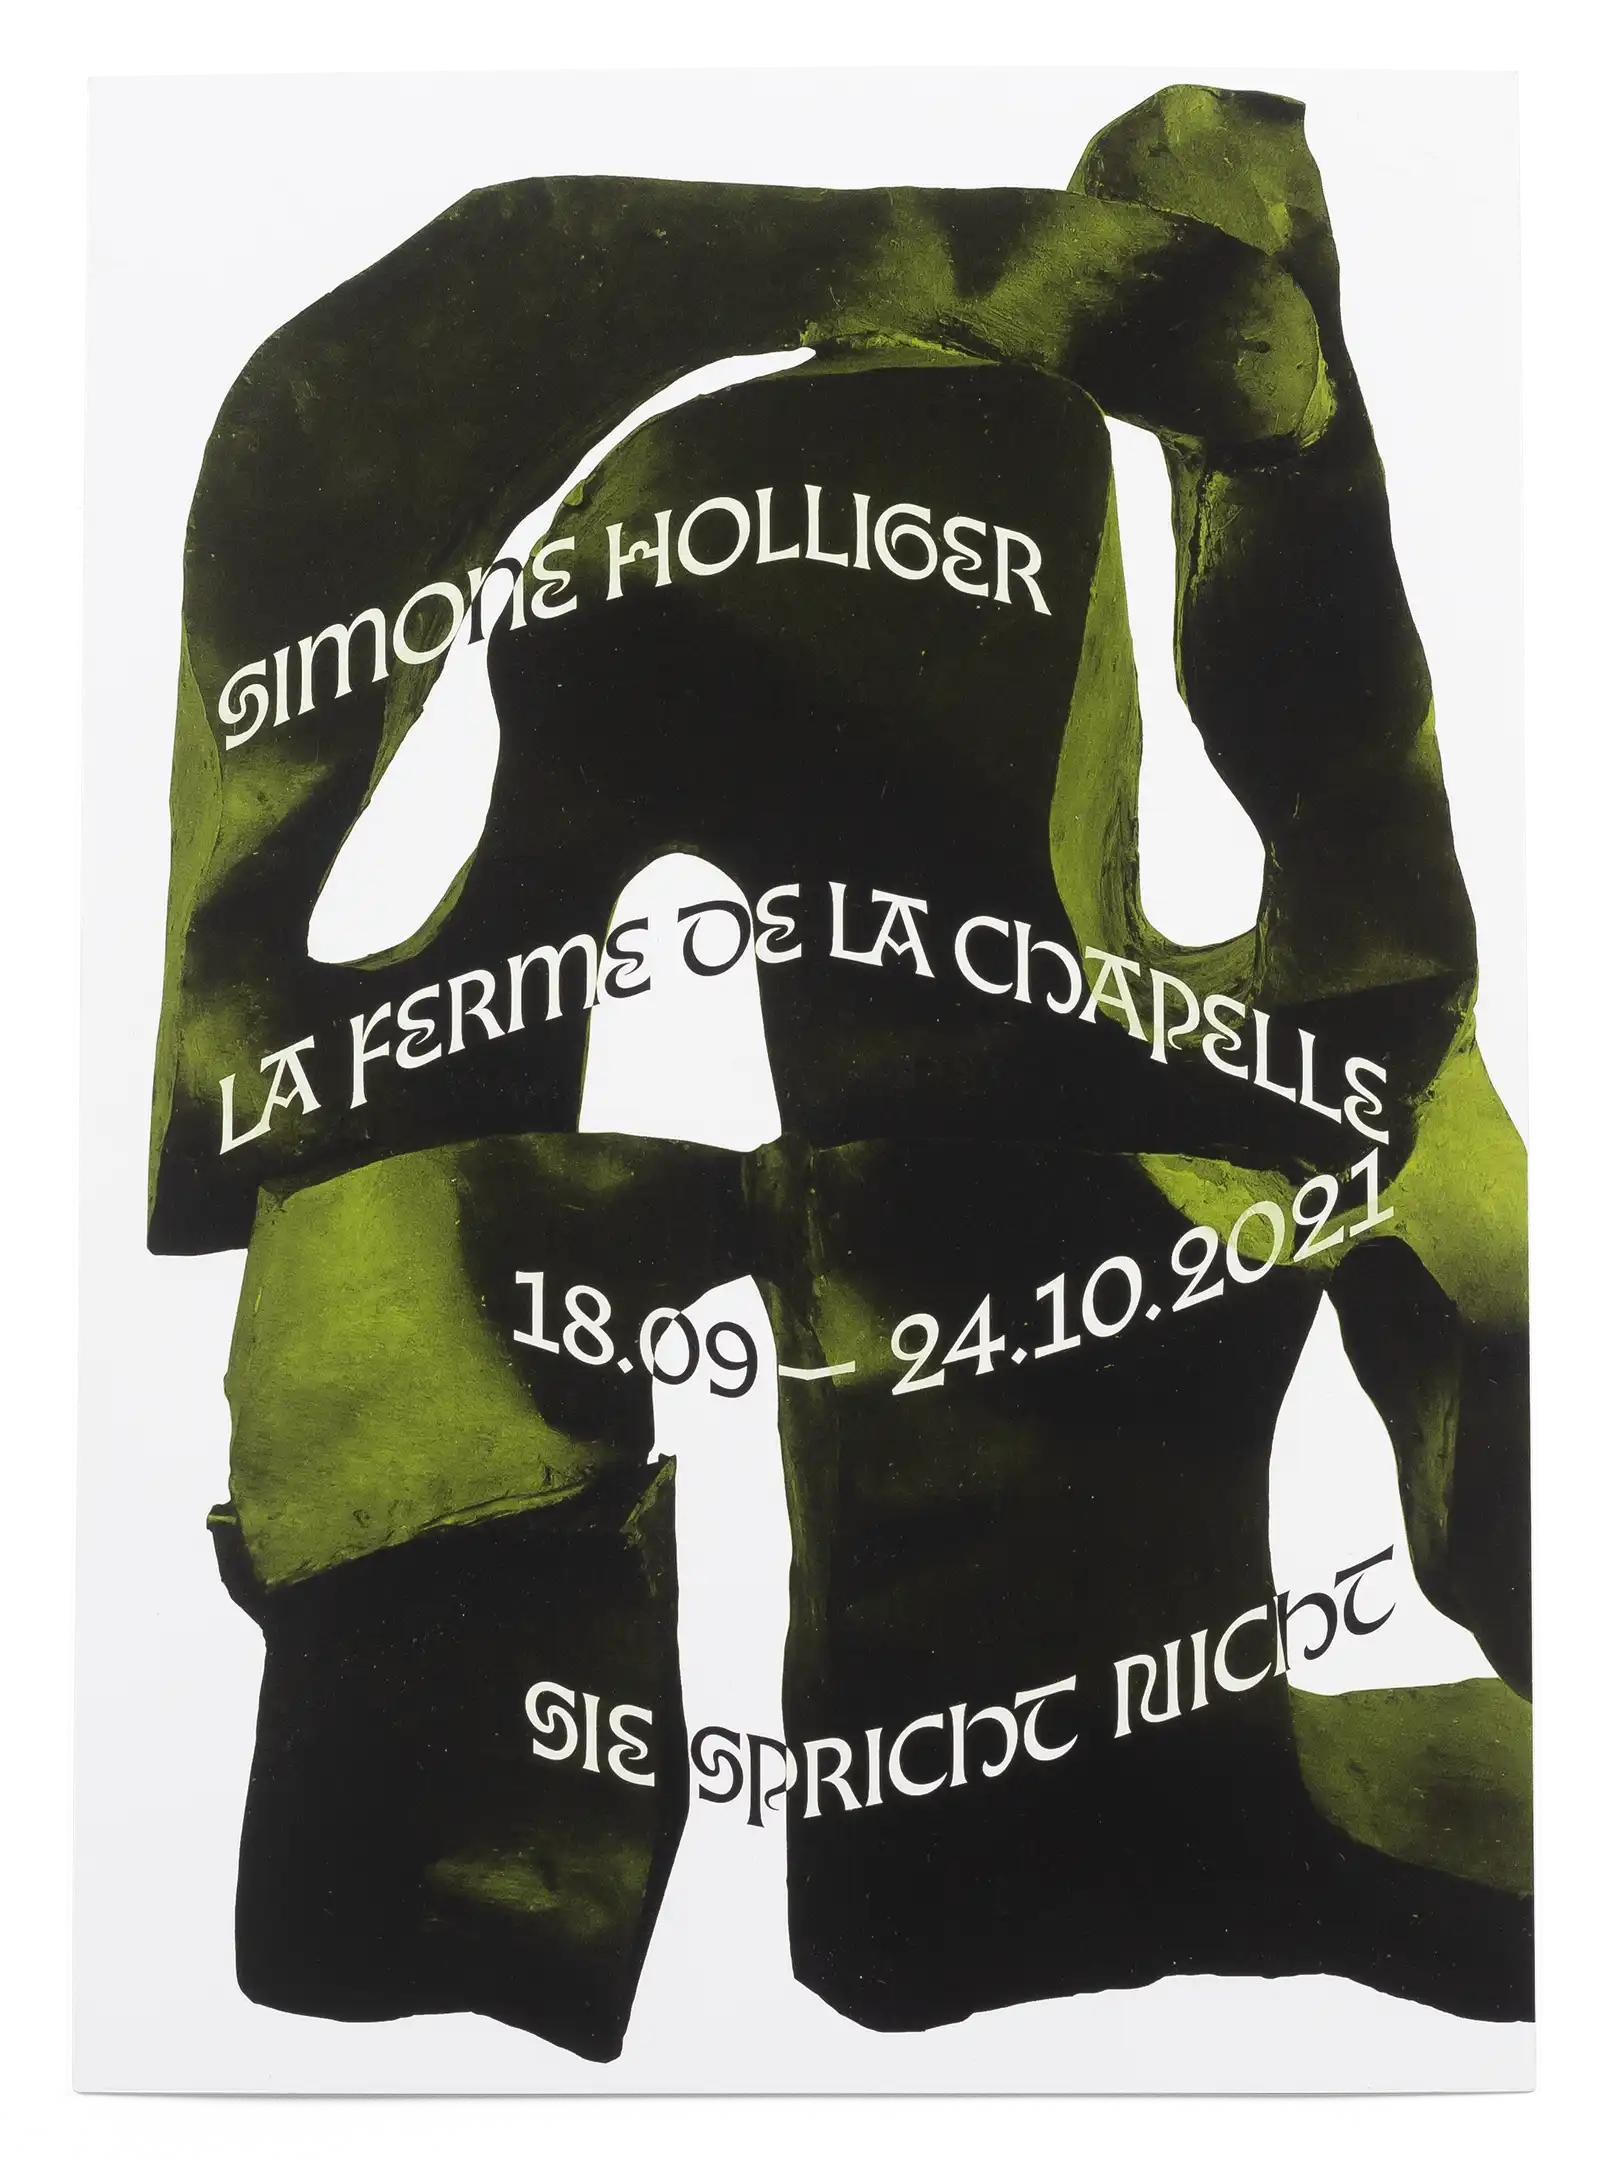 Carton d’invitation pour l’exposition de Simone Holliger